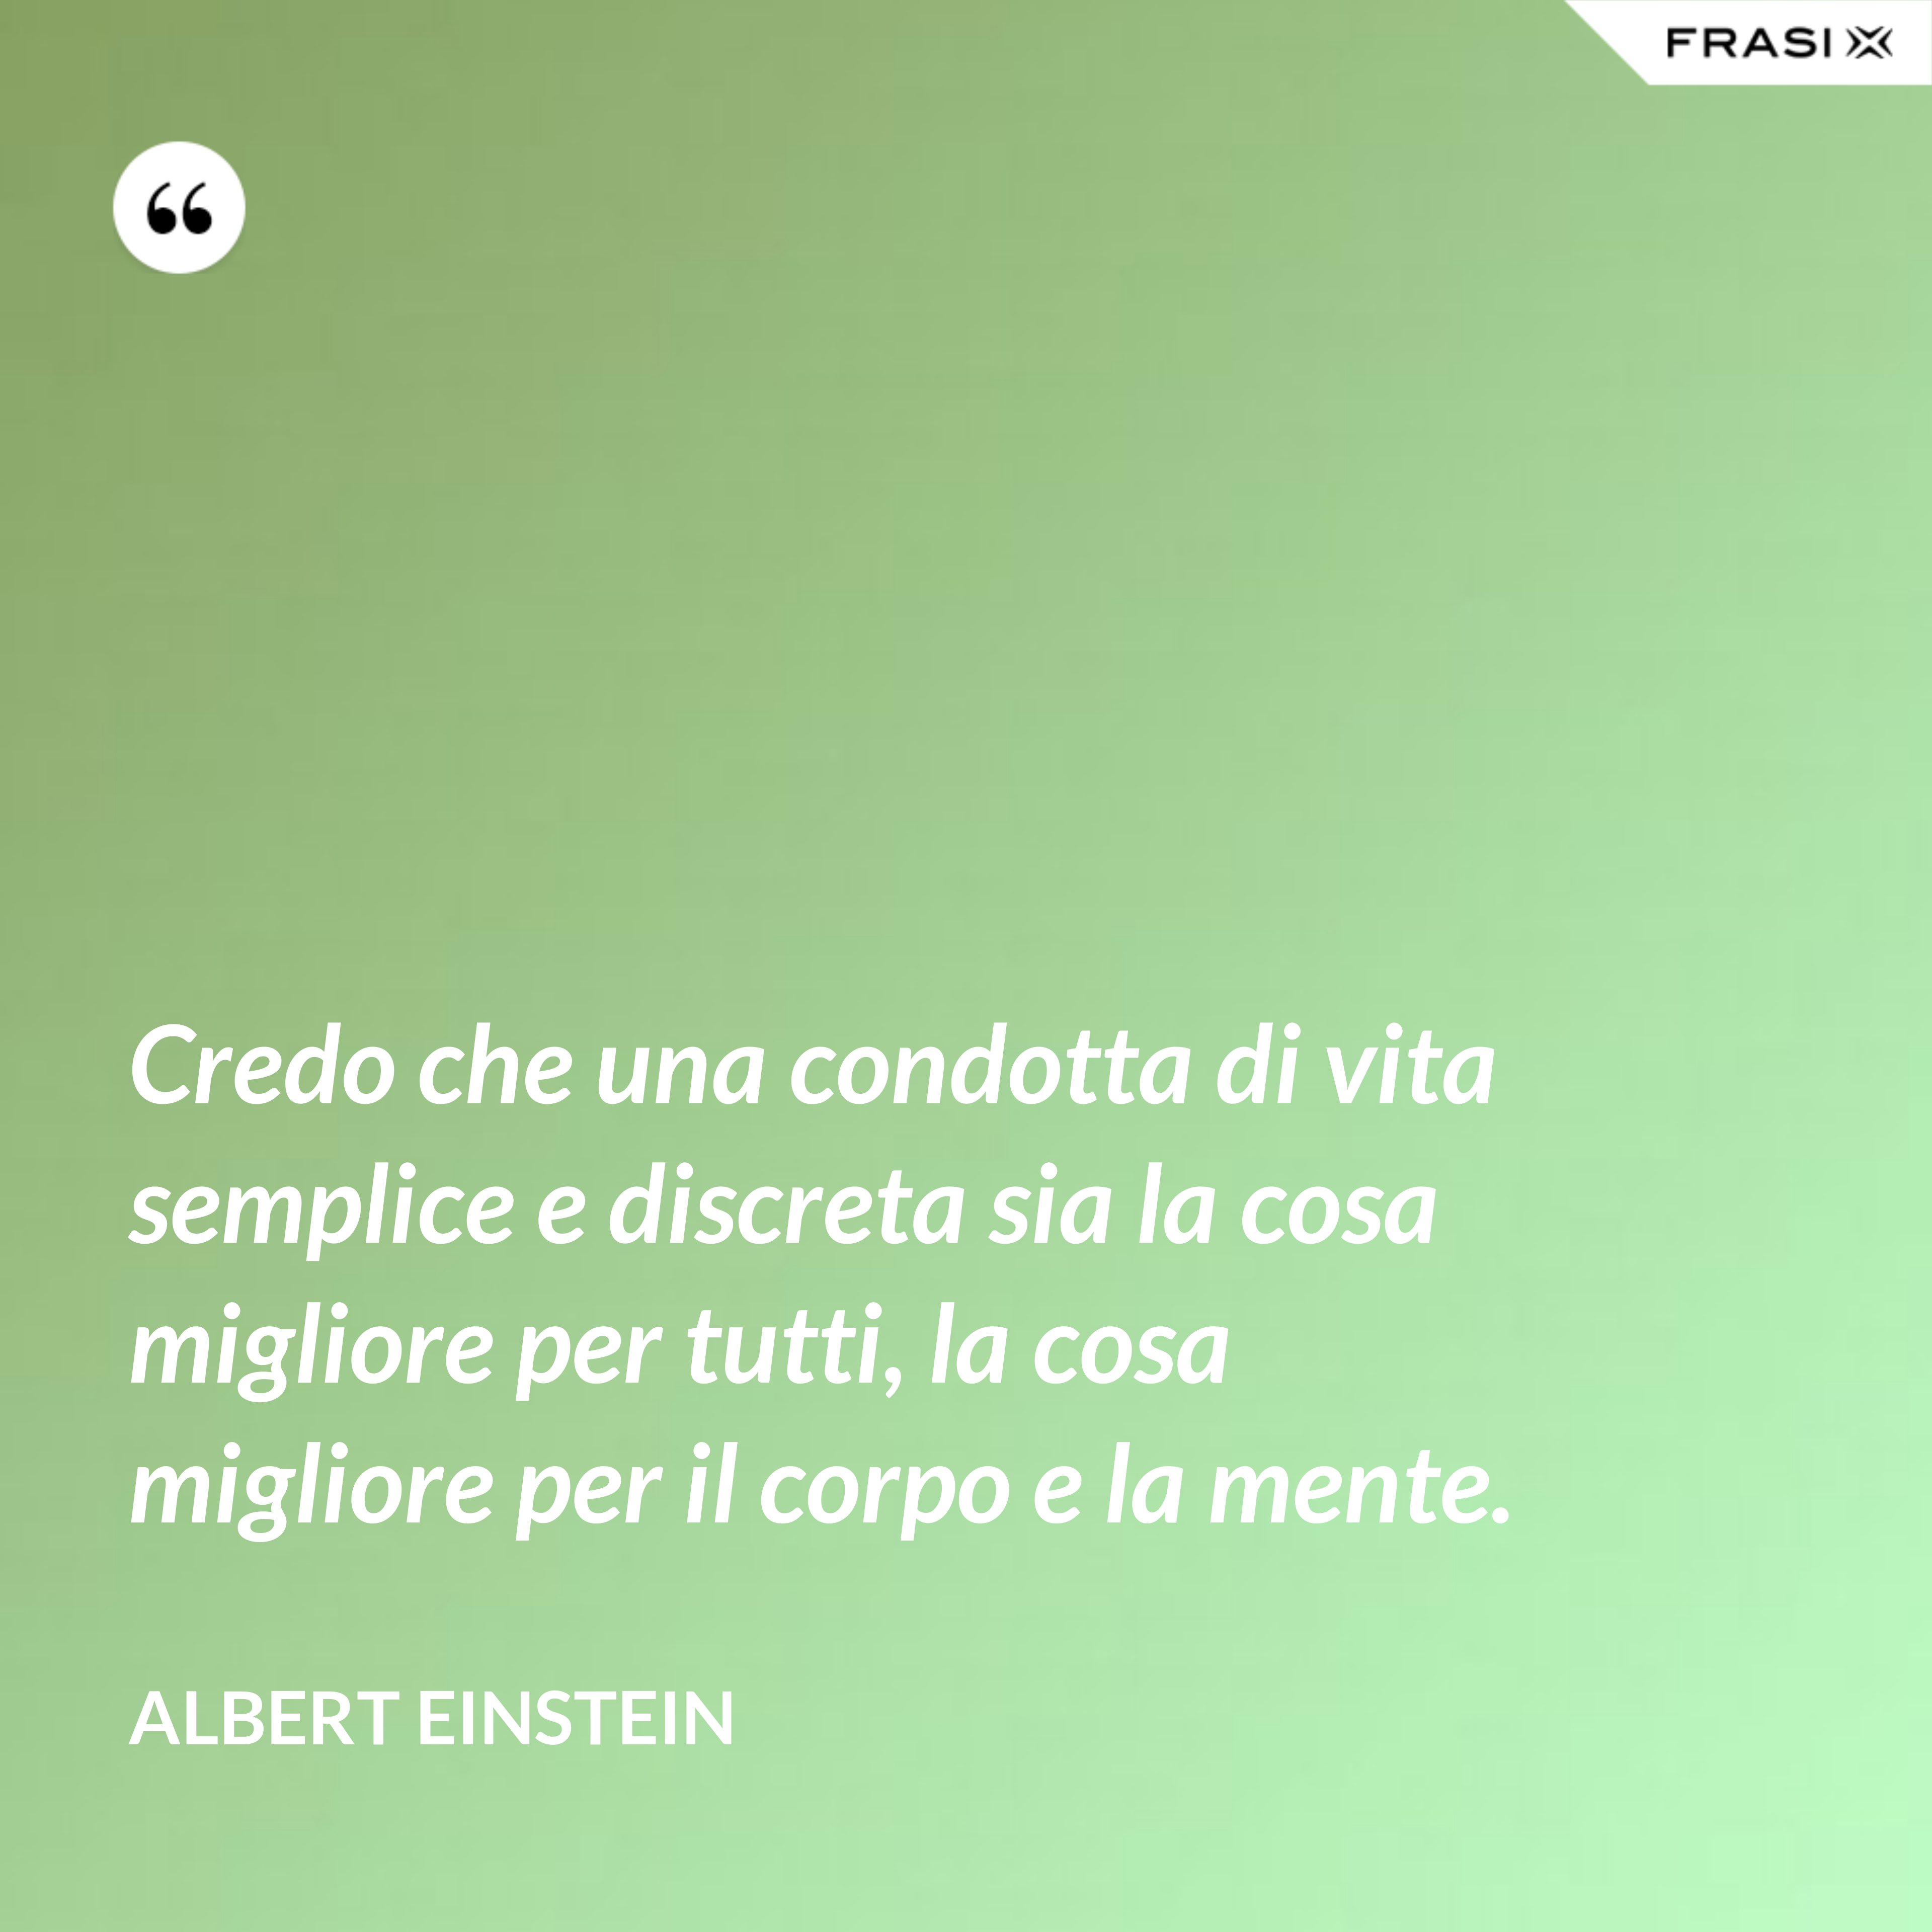 Credo che una condotta di vita semplice e discreta sia la cosa migliore per tutti, la cosa migliore per il corpo e la mente. - Albert Einstein